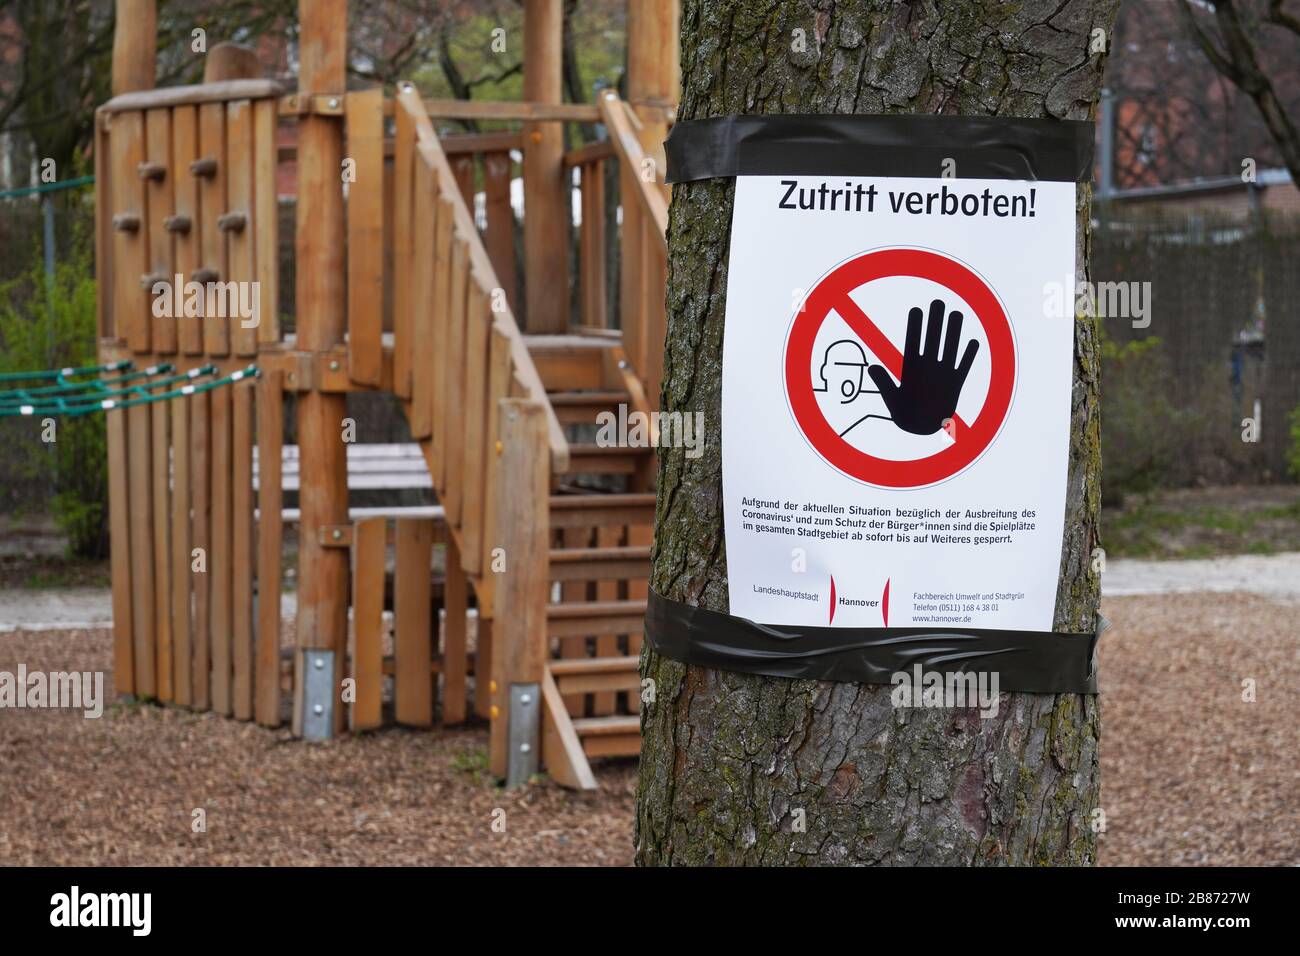 Hannover, Deutschland - 20. März 2020: Geschlossener Spielplatz mit Zutritt verbotenem - also kein Eintrag auf Deutsch - Verbotsschild als soziale Distanzierungsmaßnahme während der Corona-Epidemie-Krise Stockfoto